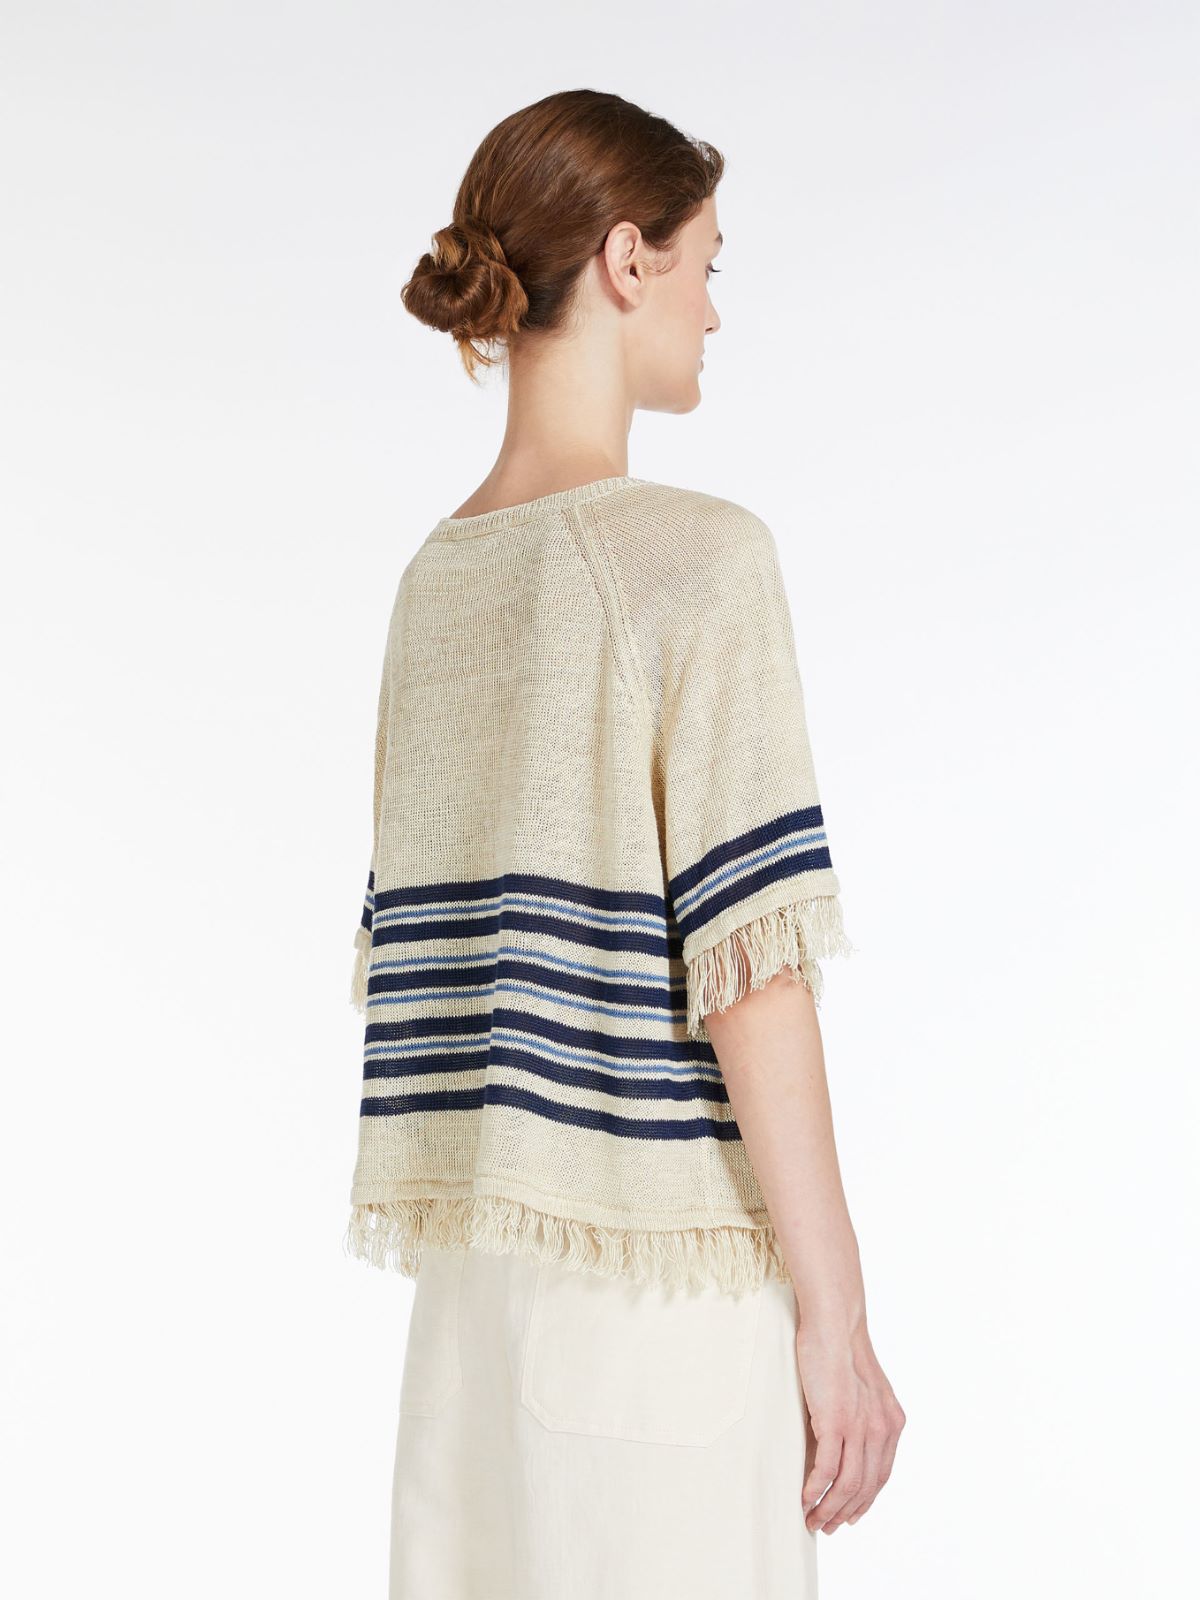  Linen knit jumper - IVORY - Weekend Max Mara - 3